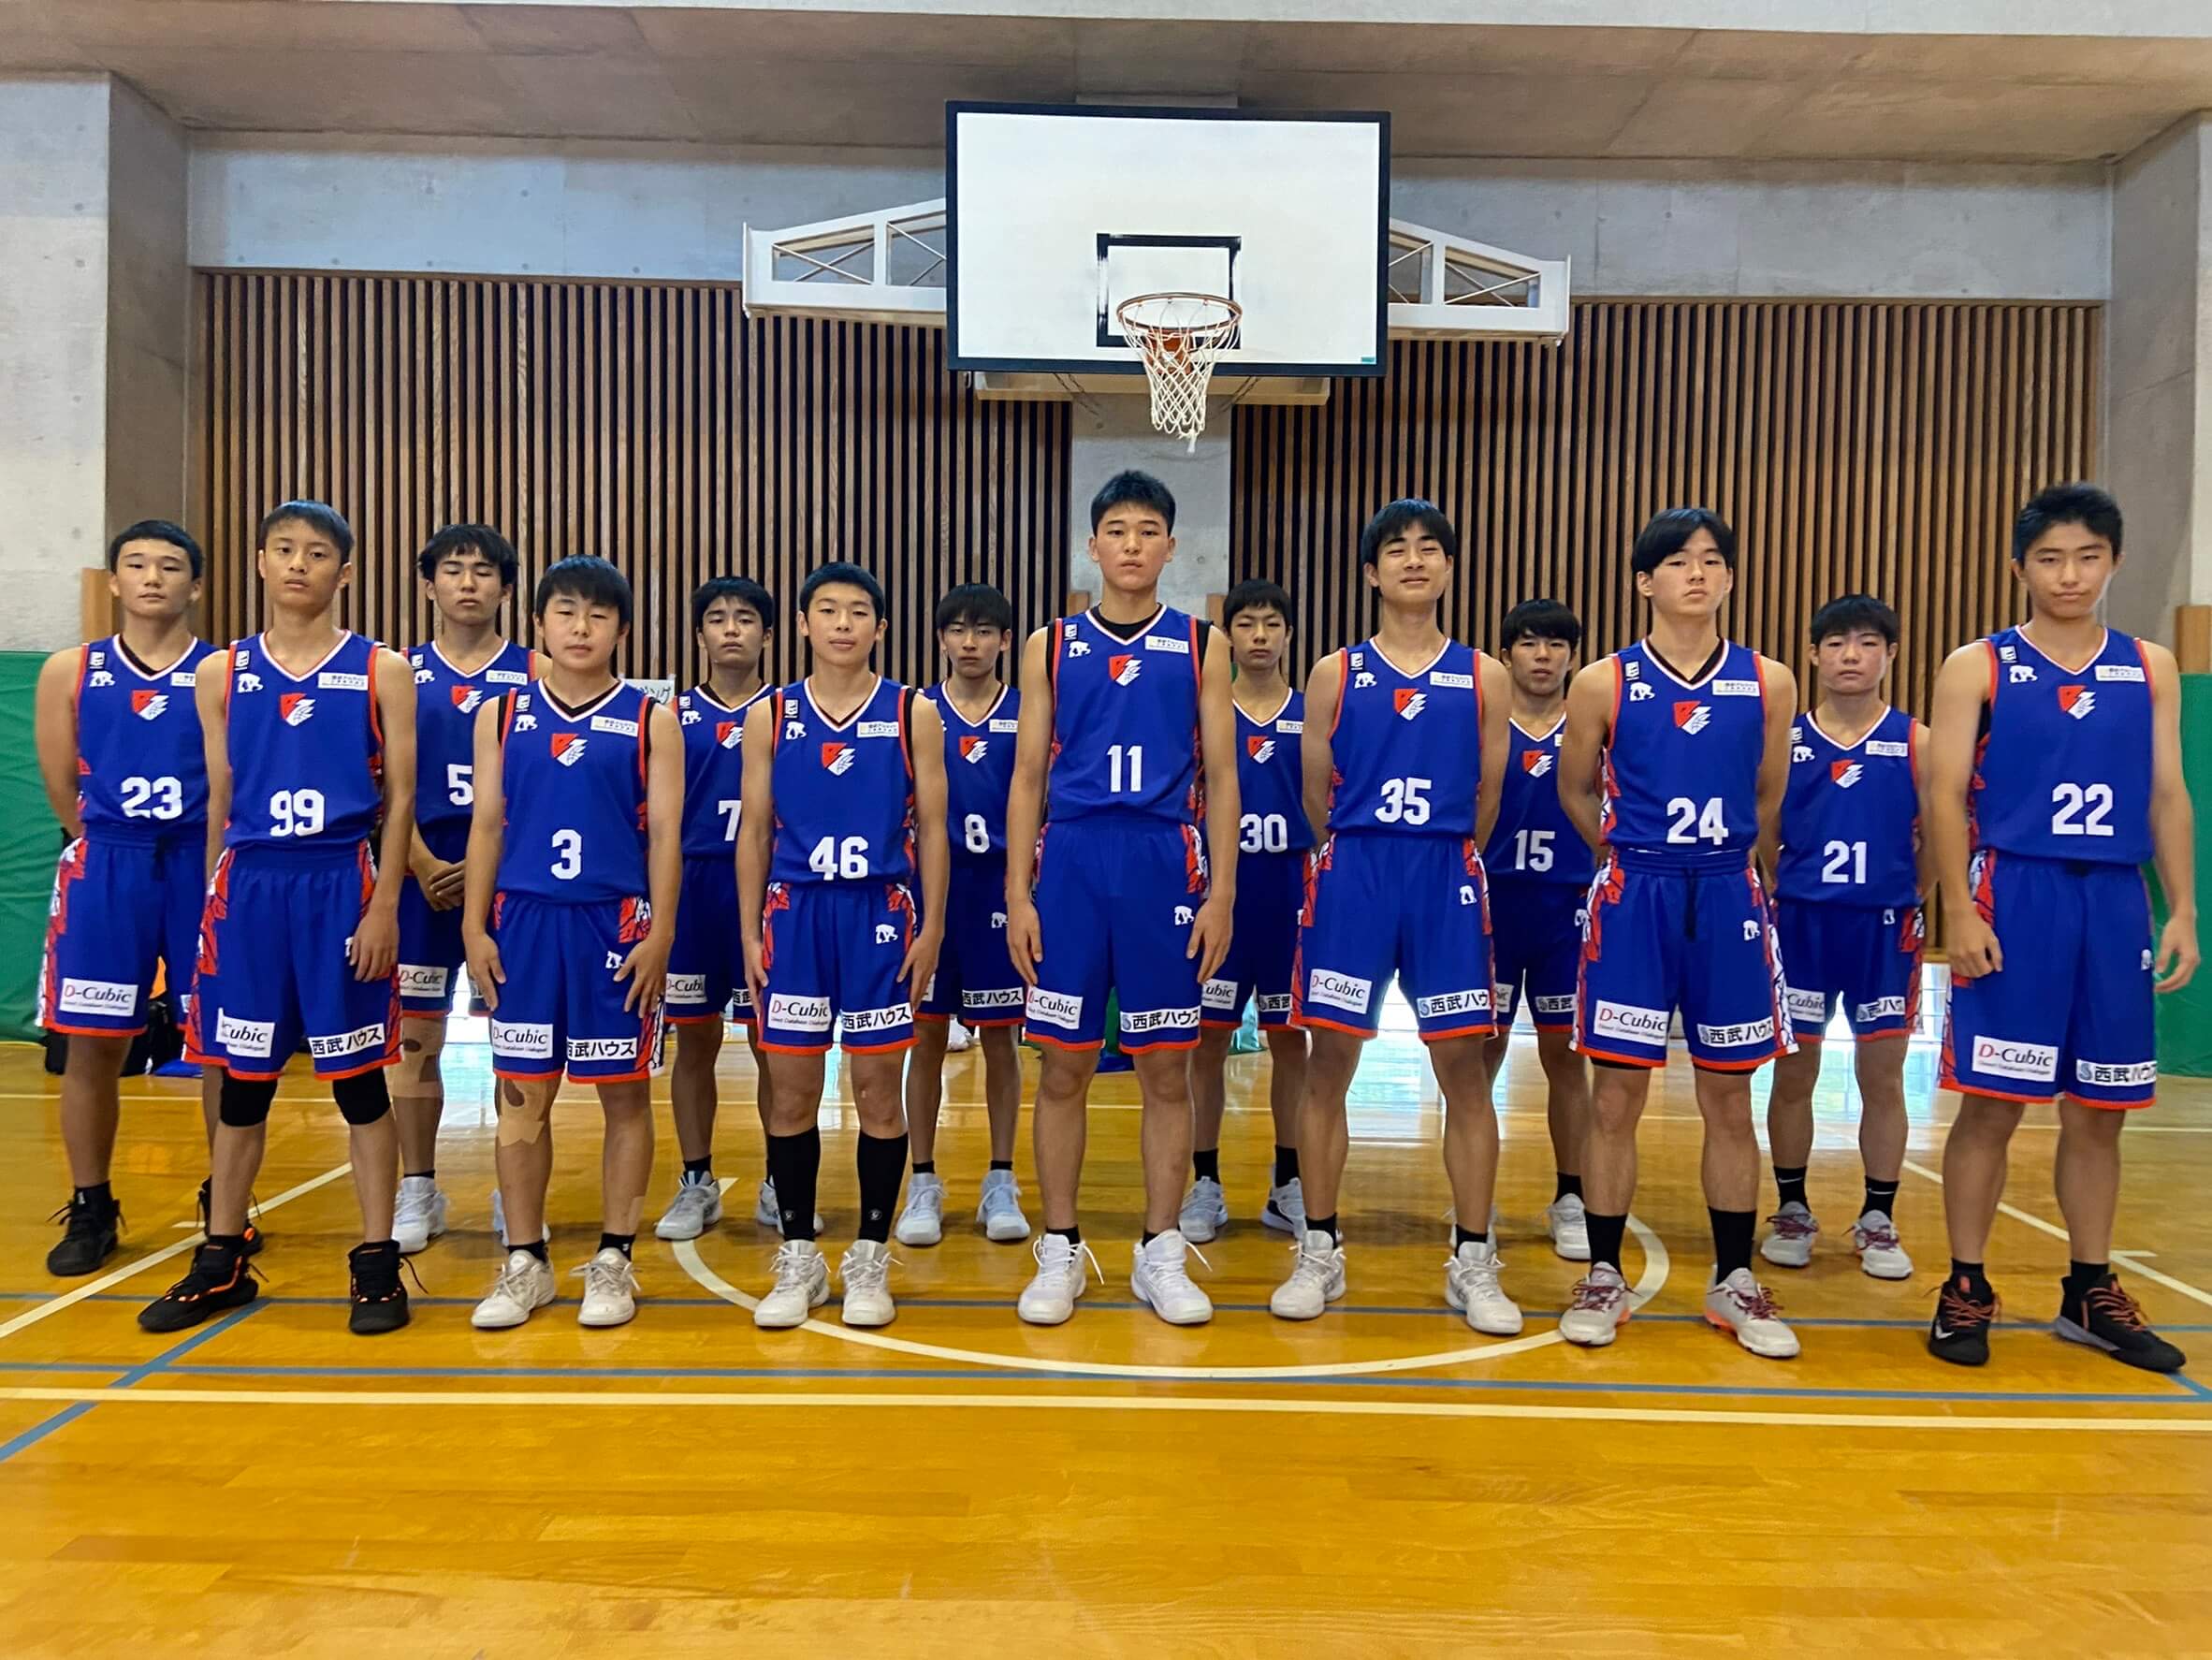 21年度 第2回福岡県u15バスケットボール選手権大会 決勝進出のお知らせ ライジングゼファー福岡